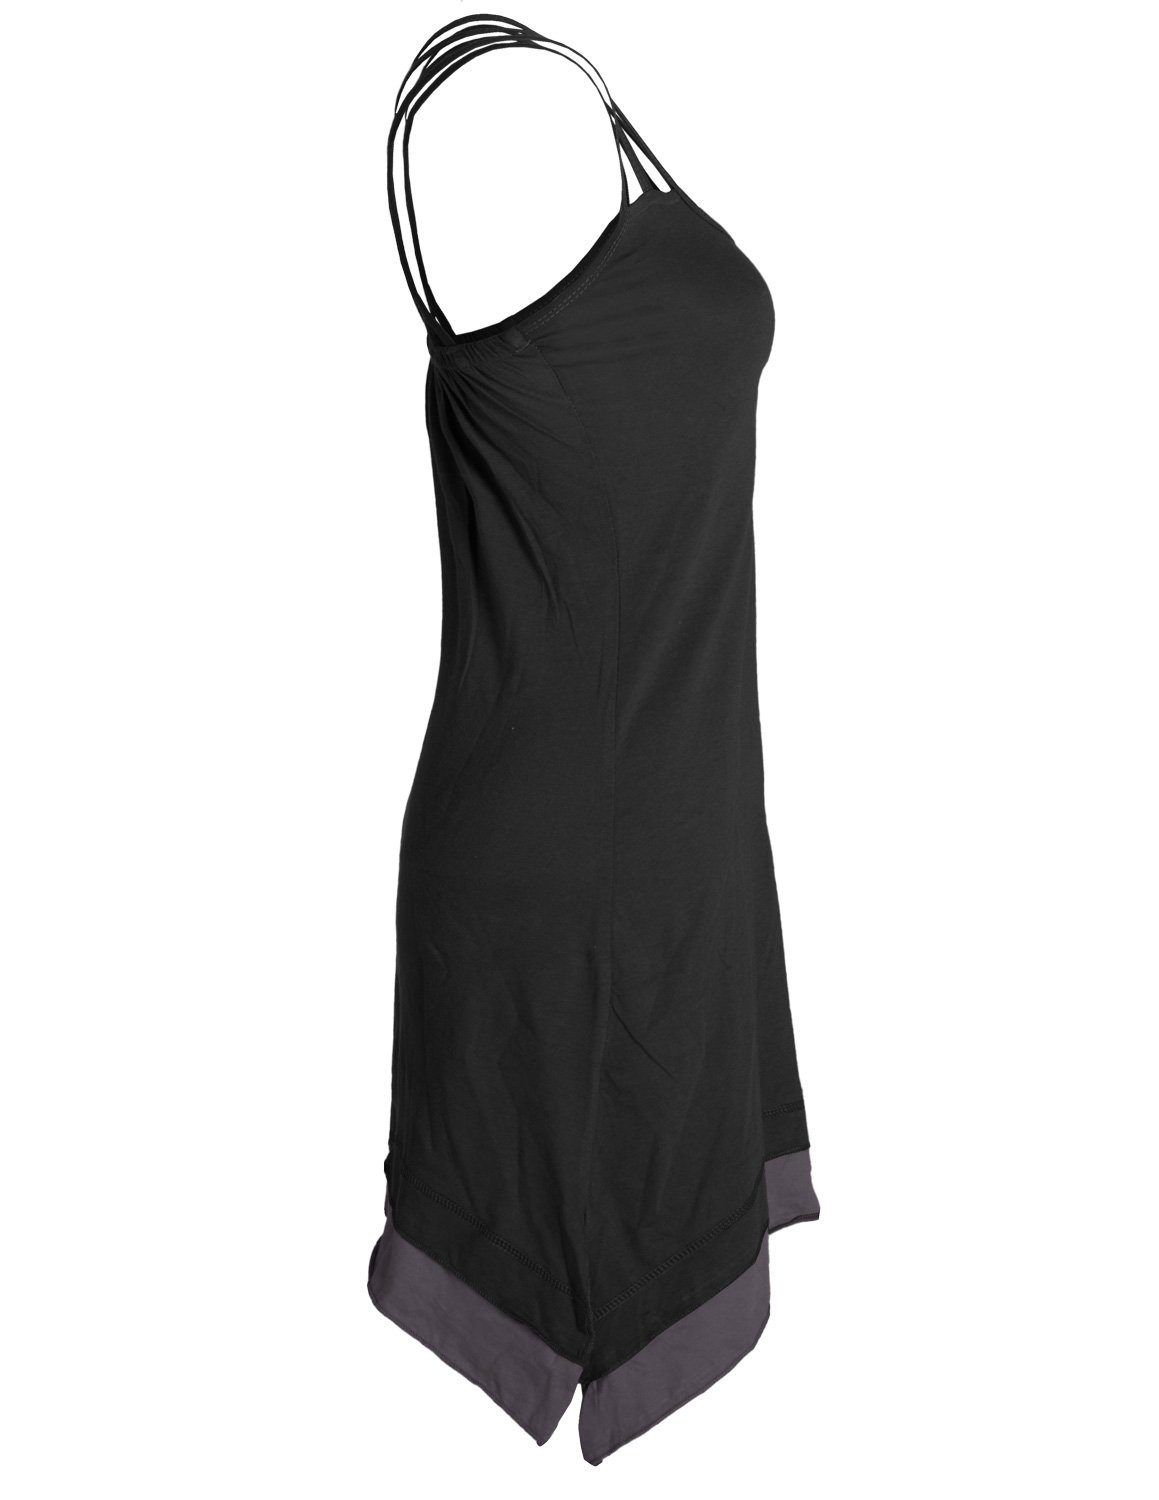 Vishes Sommerkleid Lagenlook schwarz Style mit Organic Zipfeln Cotton Elfen, Boho Trägerkleid Hippie